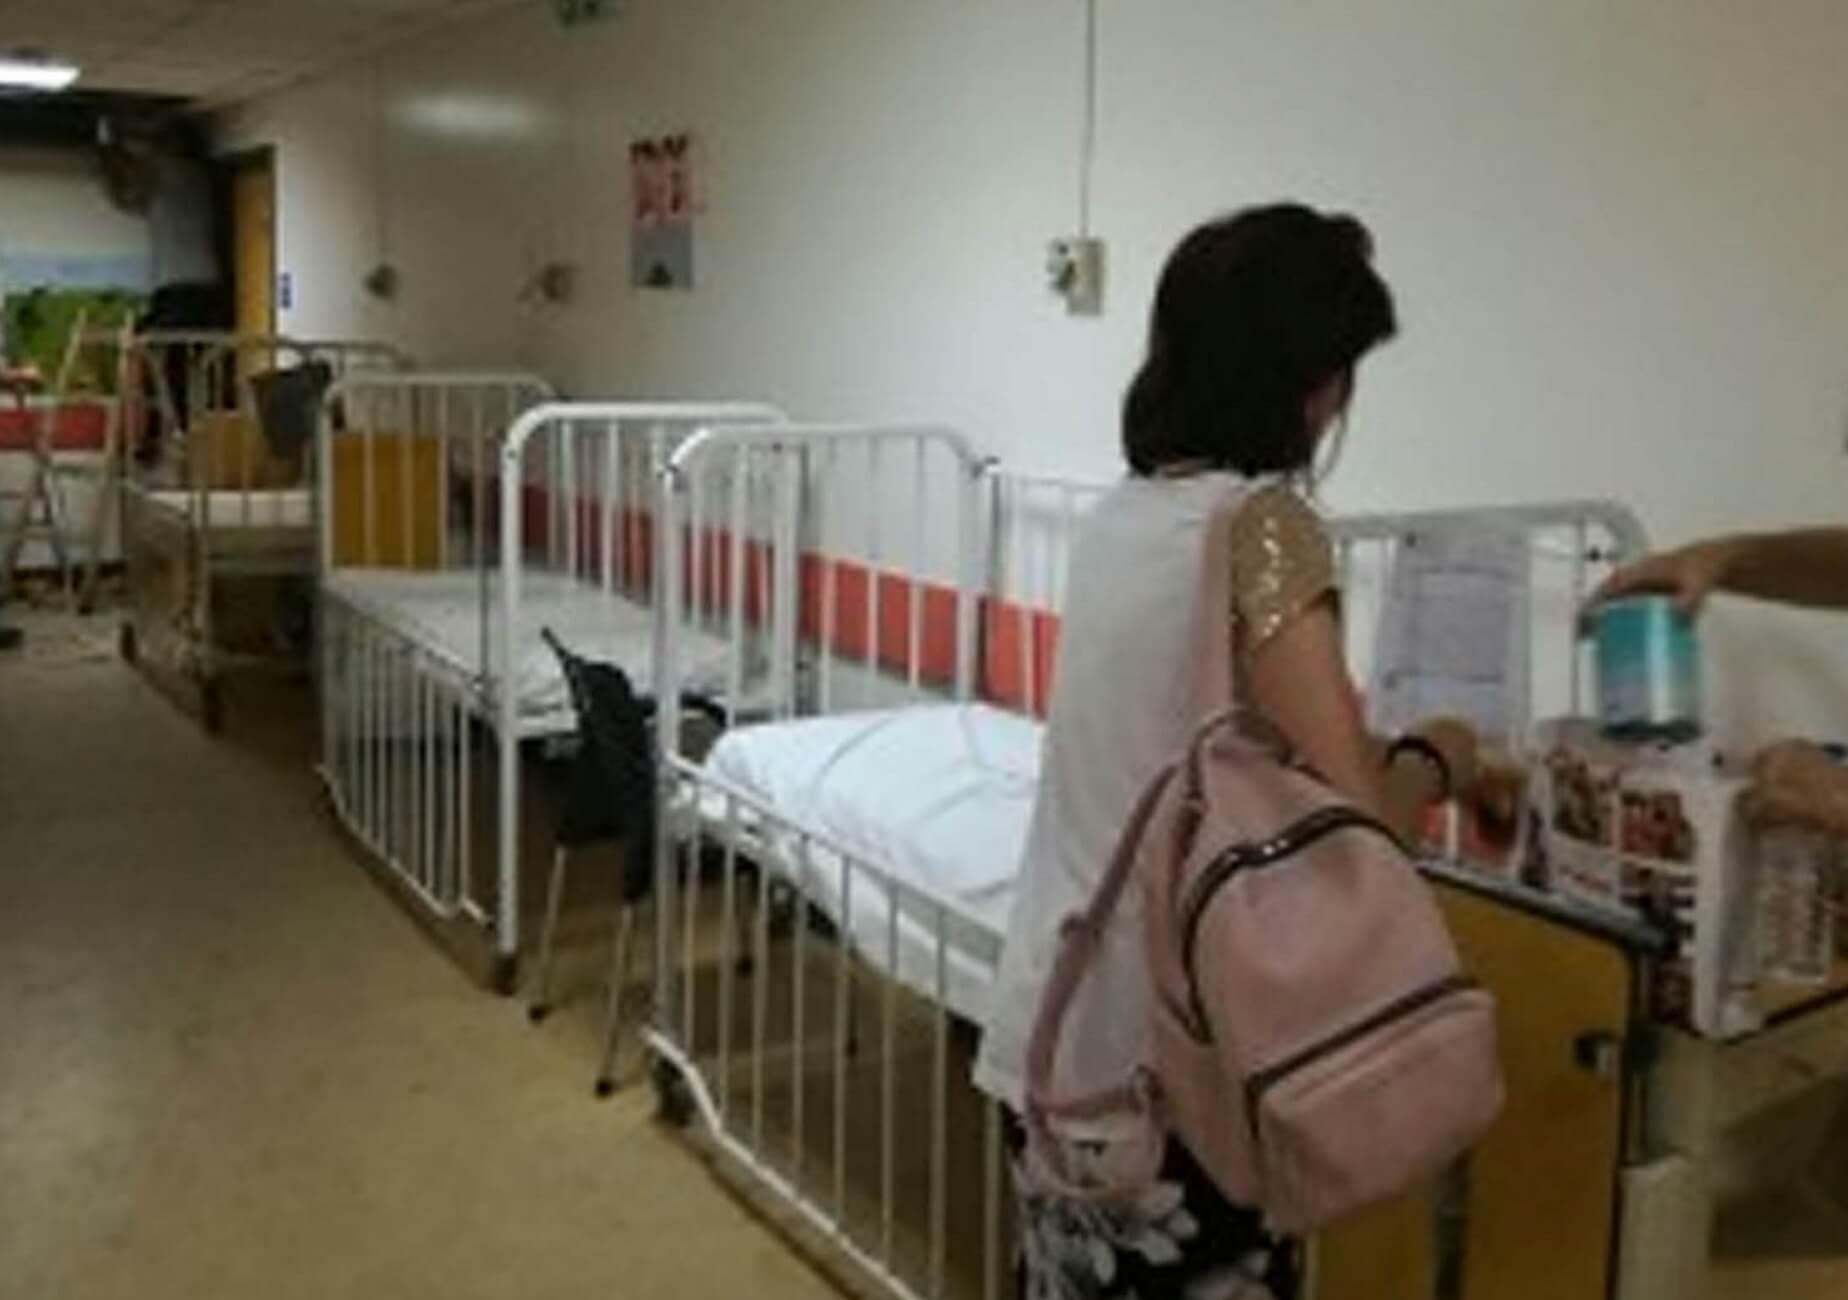 Ηράκλειο: Έβαλαν μωρό 8 μηνών σε ράντζο – Εικόνες ντροπής στο νοσοκομείο και απίθανες δικαιολογίες – video